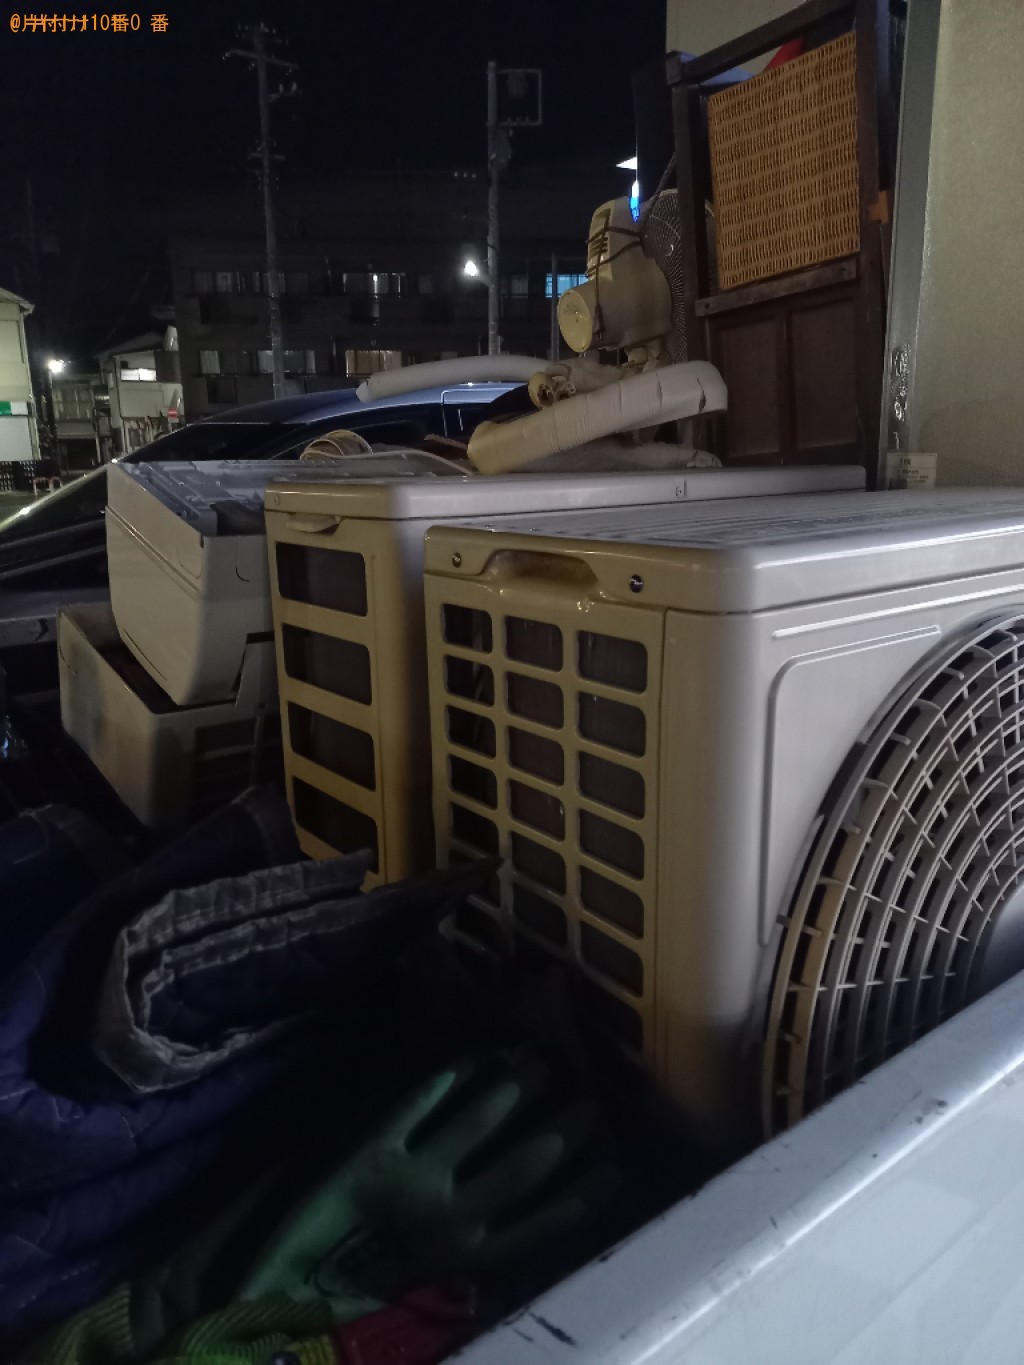 【練馬区関町】家庭用エアコンの出張不用品回収・処分ご依頼